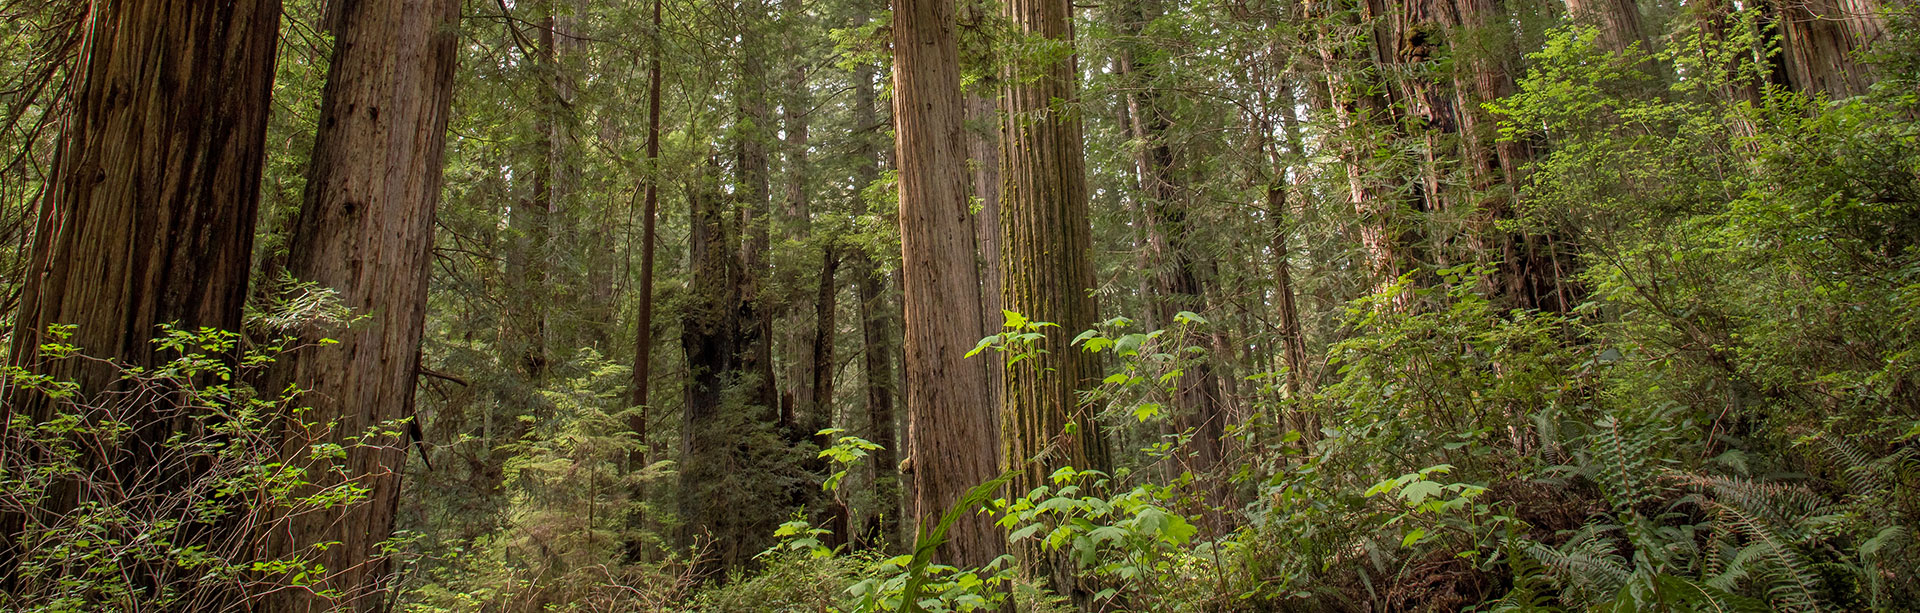 Redwood Forest Landscape Image